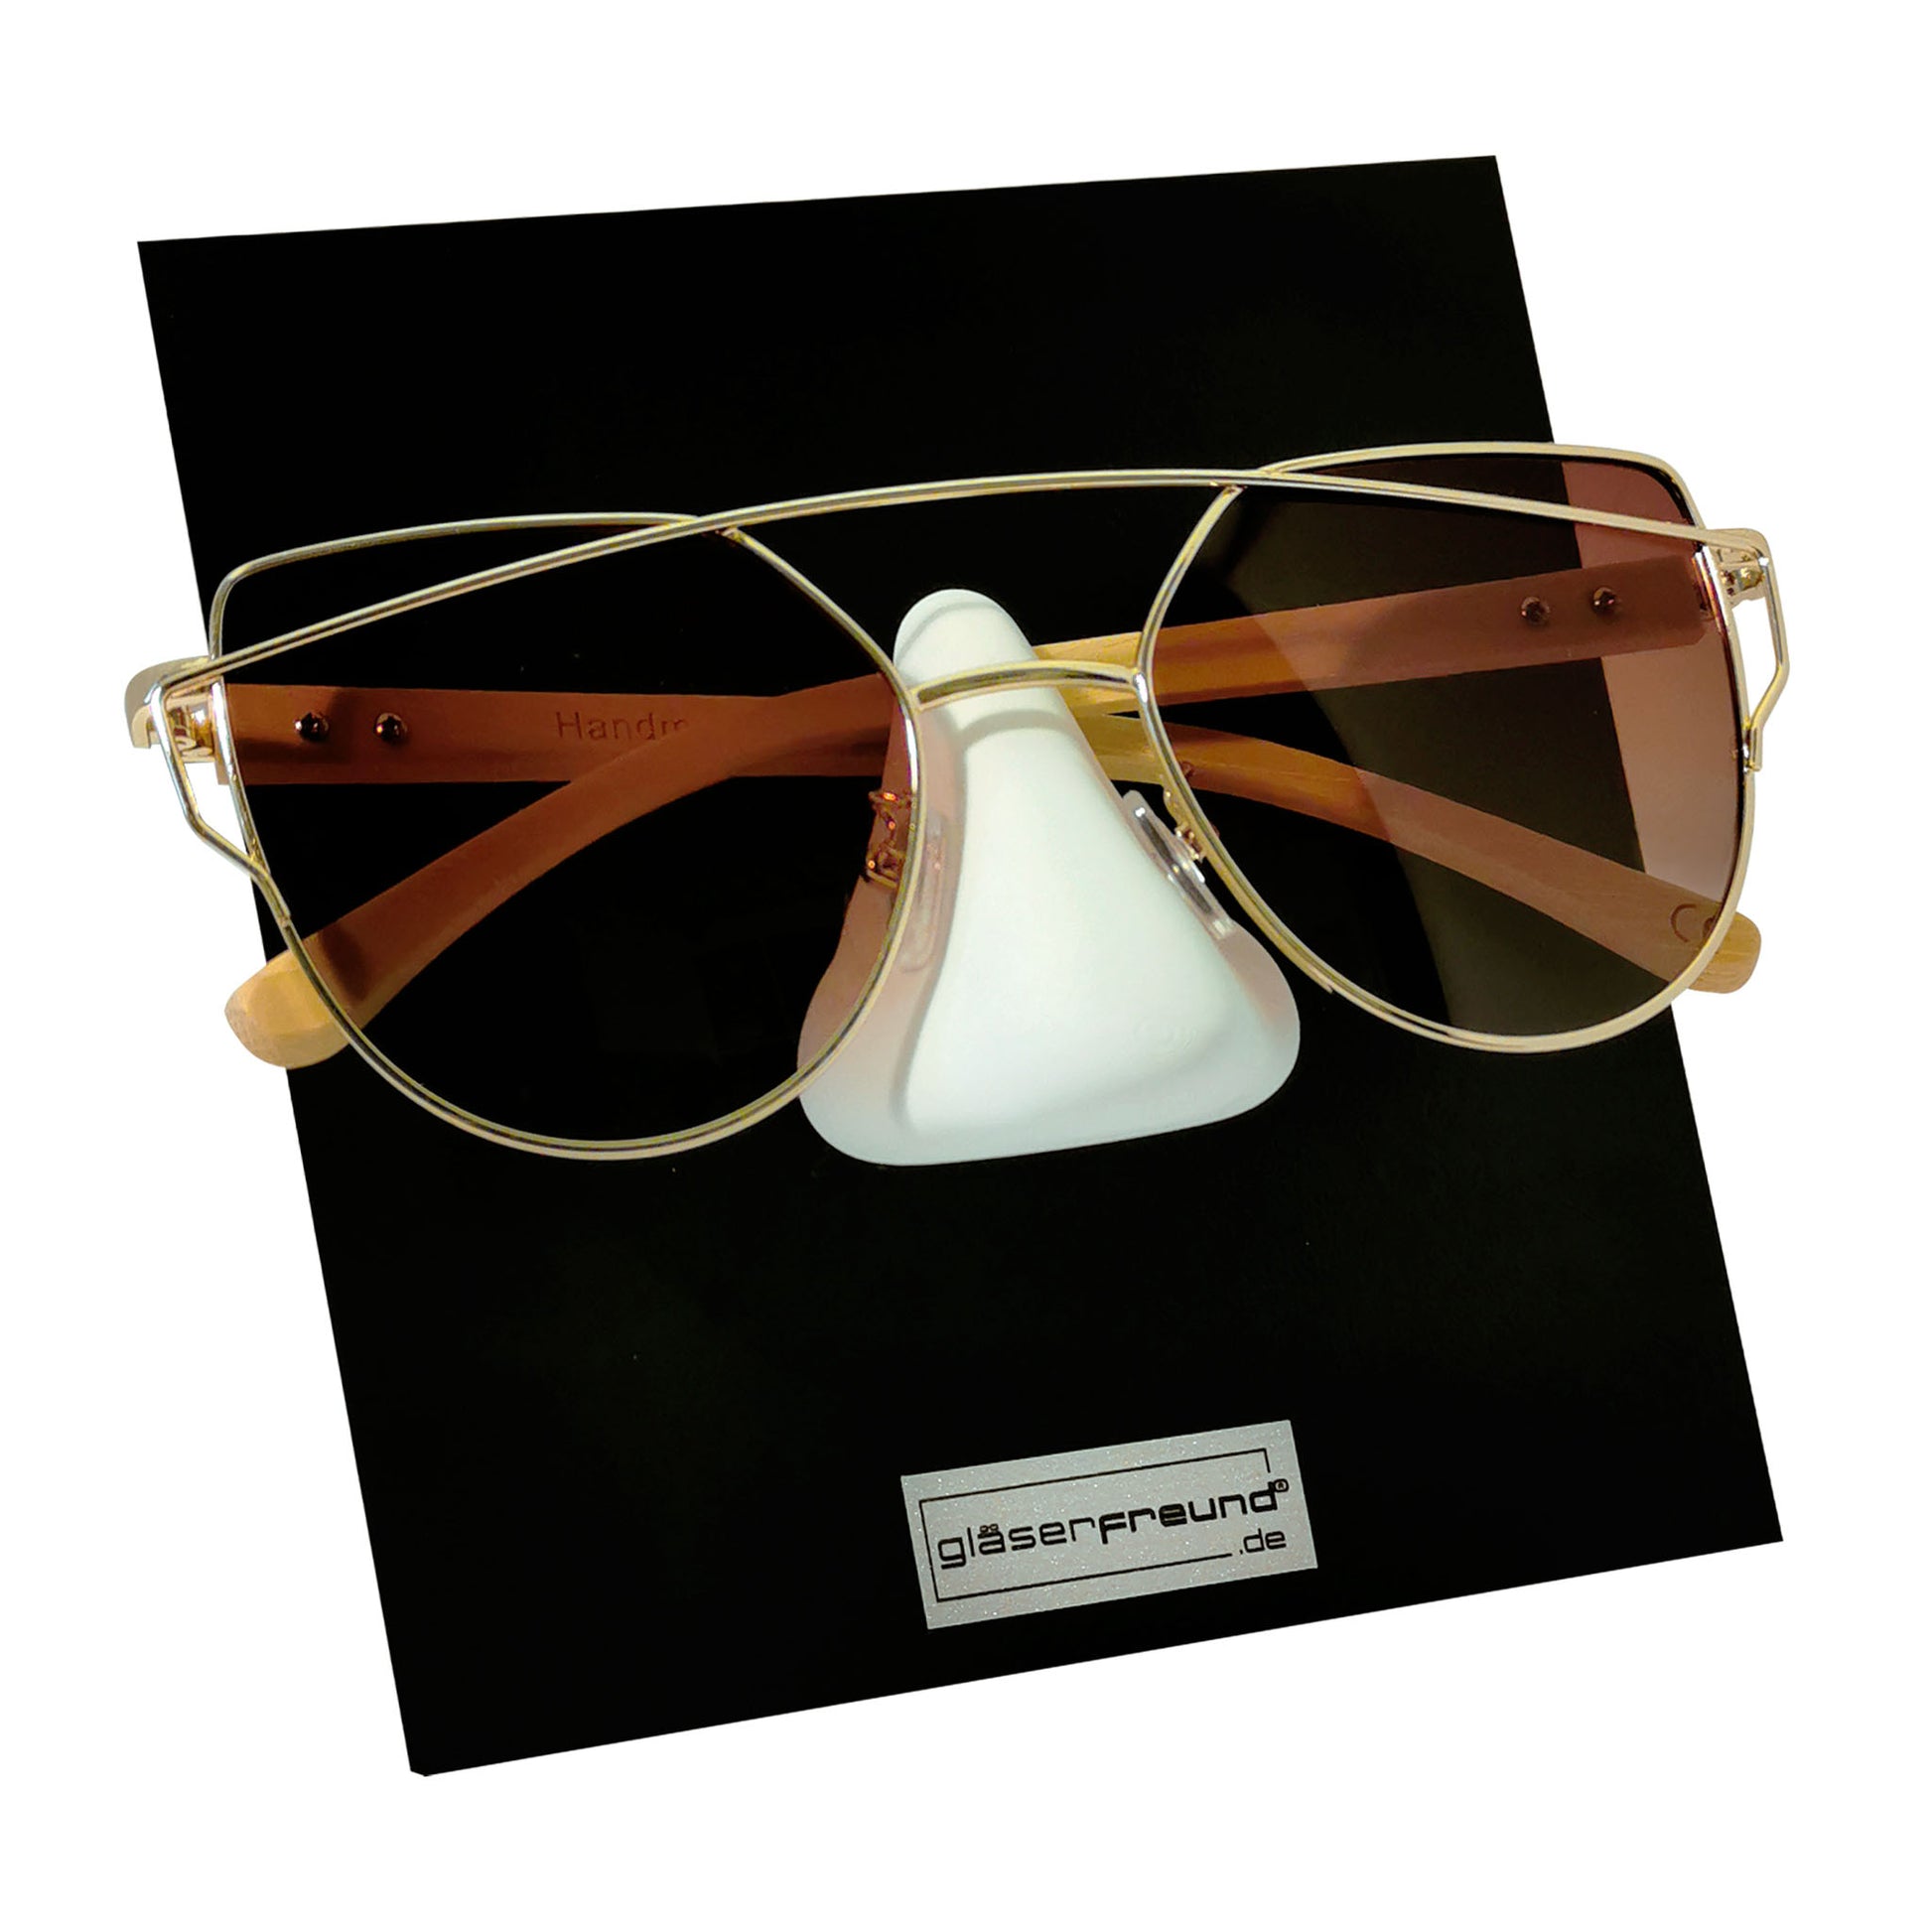 Brillenhalter für die Wand, Brillenhalter Wandhalterung, Sonnenbrillen  Regal, Sonnenbrillen Aufbewahrung, Brillenhalter Holz, Brillenregal -   Österreich